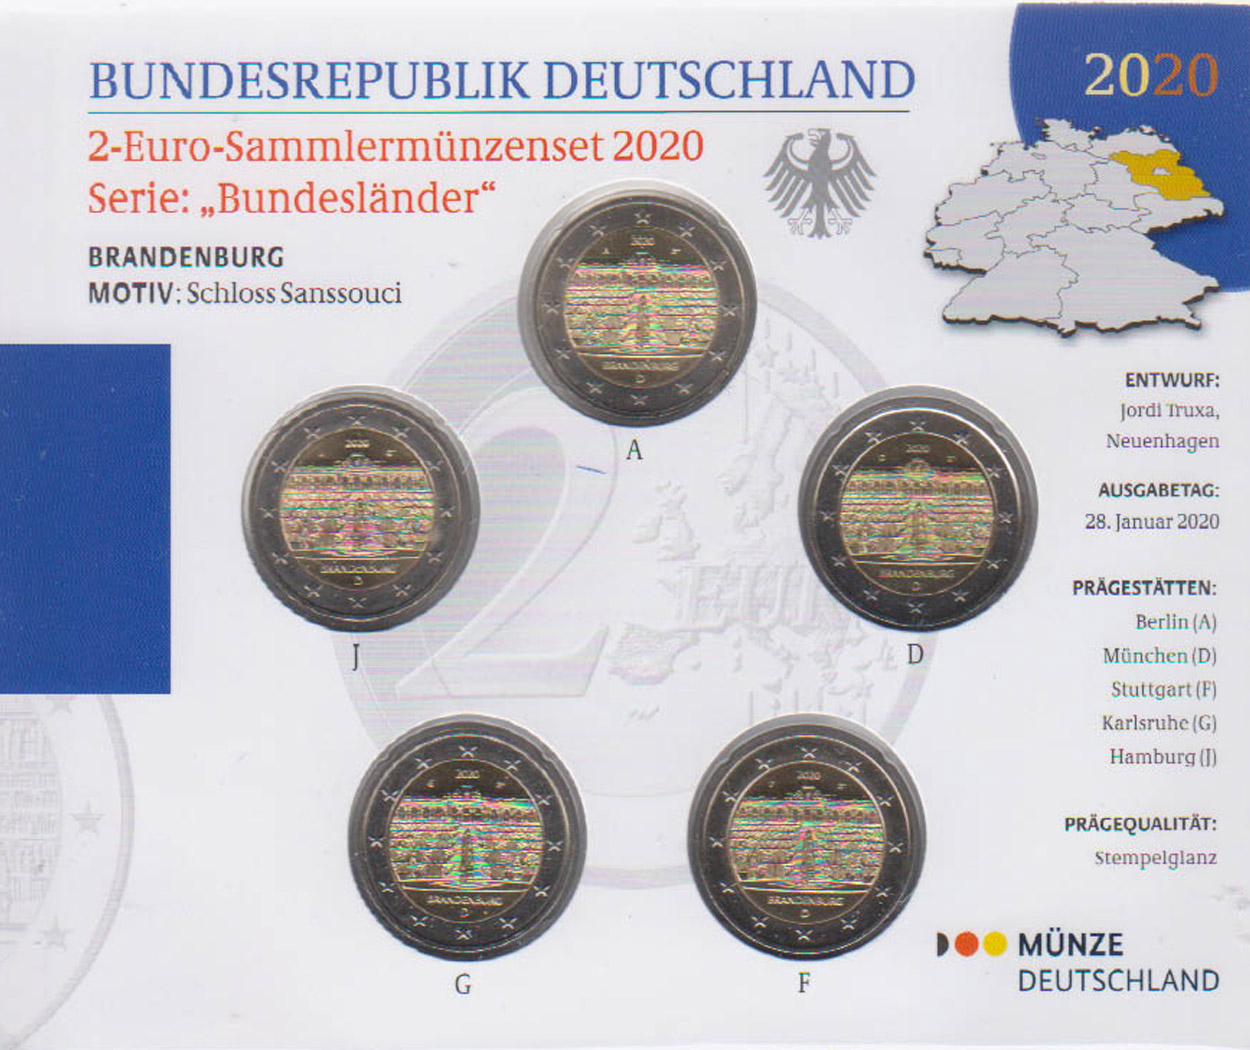  Offiz. 5x 2-Euro-Sondermünzenset A-J BRD *Schloss Sanssousi - Brandenburg* 2020   